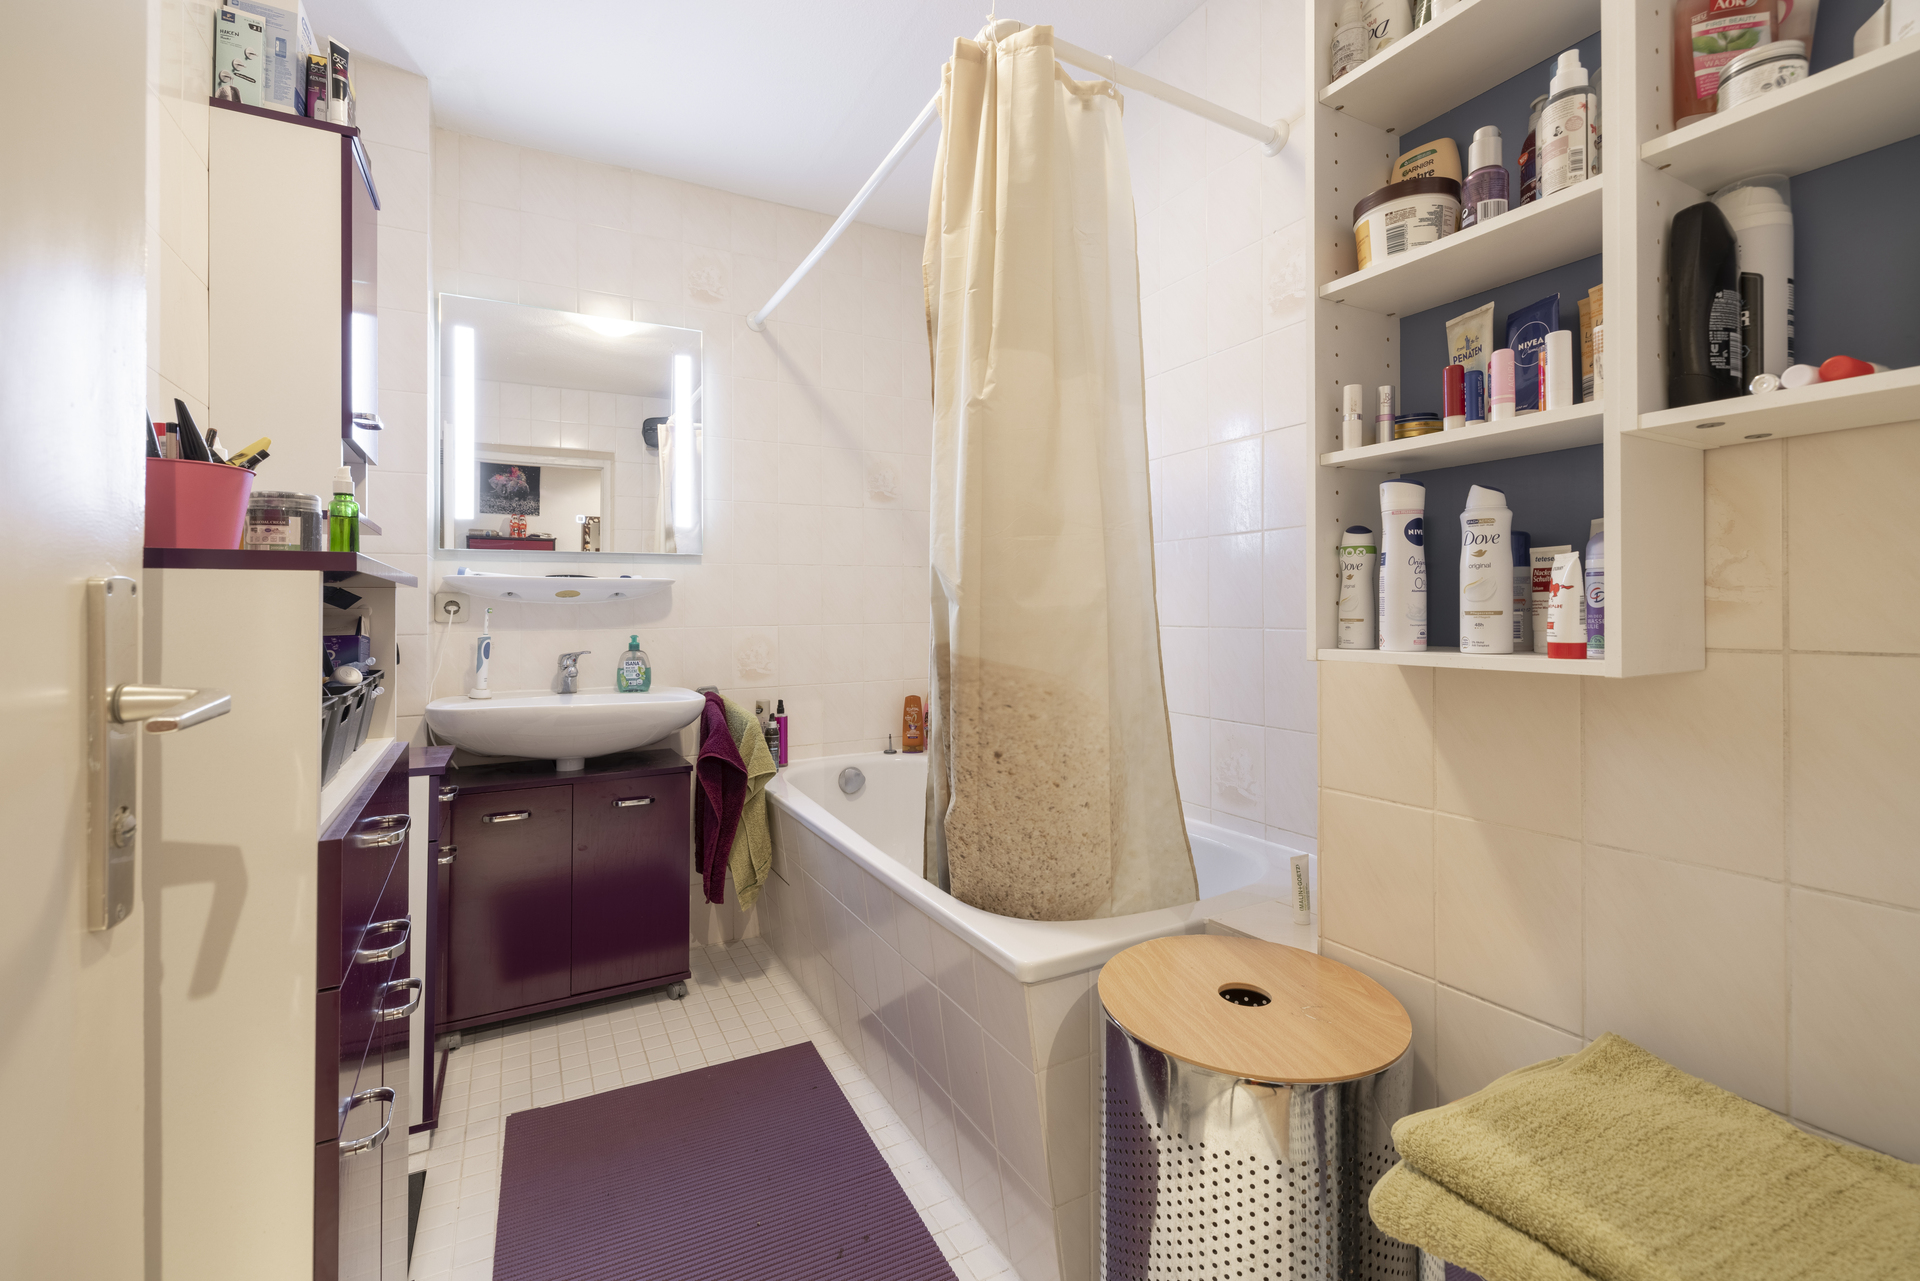 Vermietete 2-Zimmer Wohnung im denkmalgeschützten Ensemble in Thalkirchen - Badezimmer mit Dusche und Waschbecken